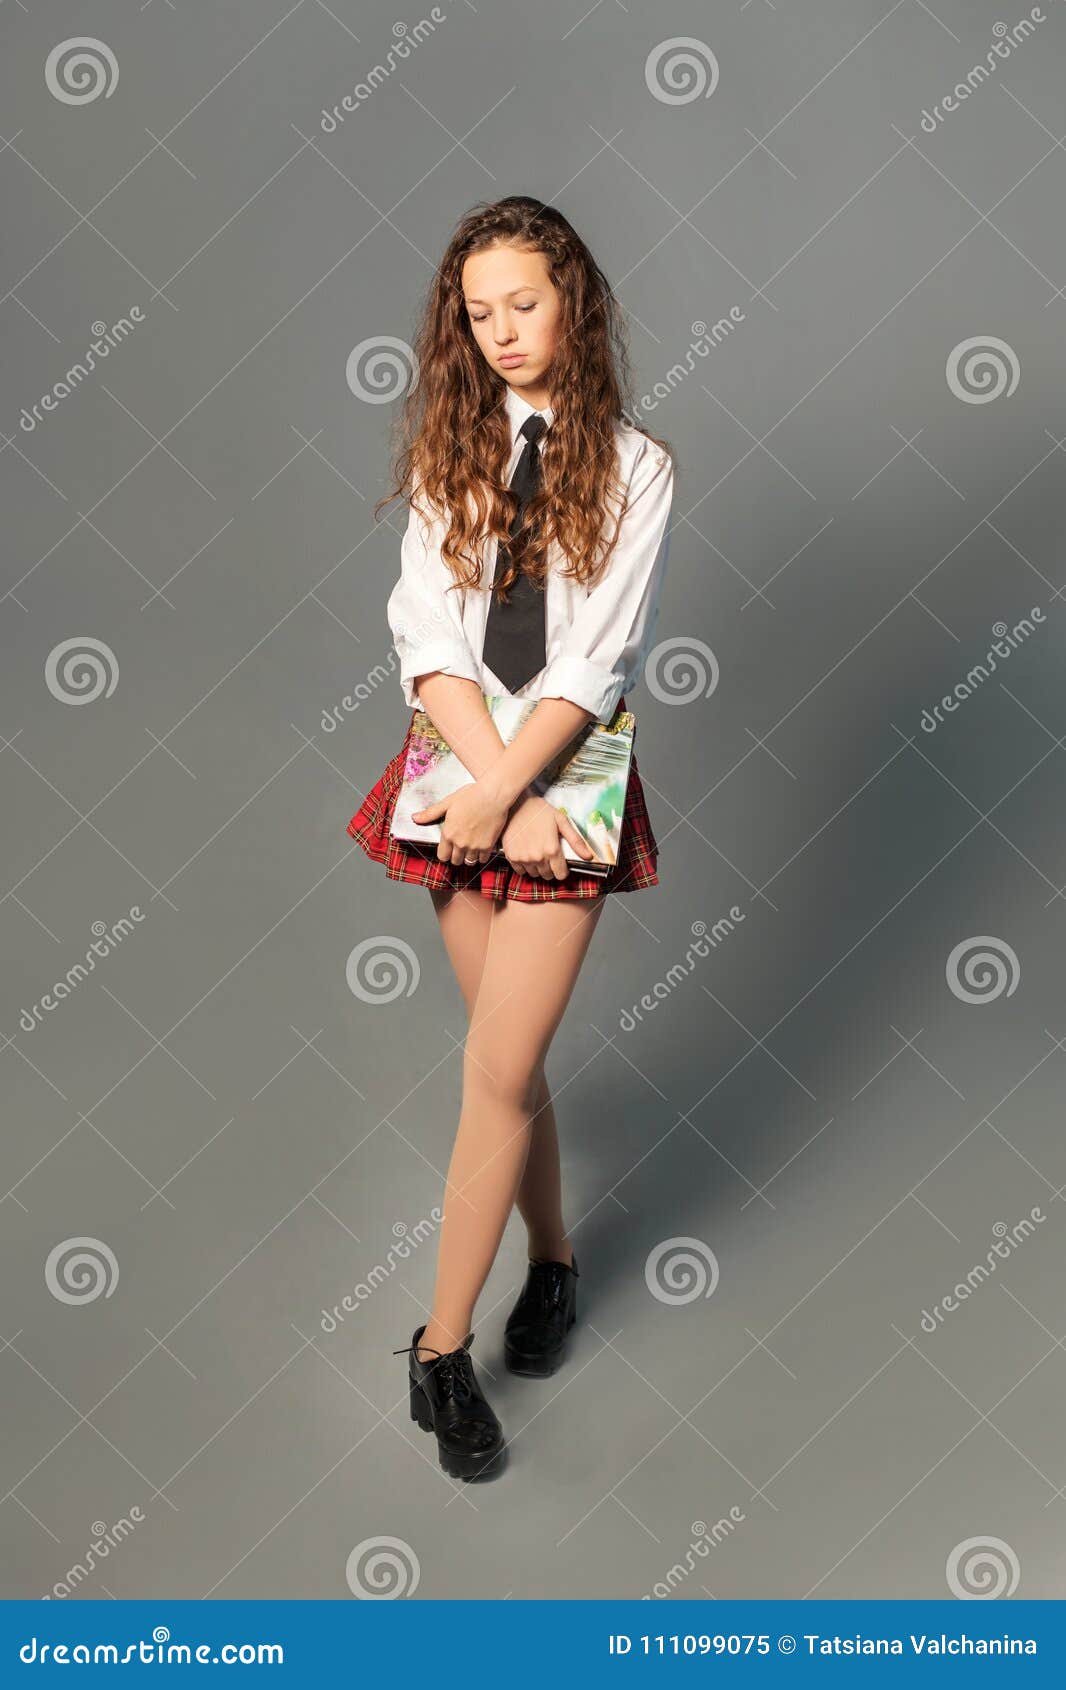 uniform brunette teen amateur